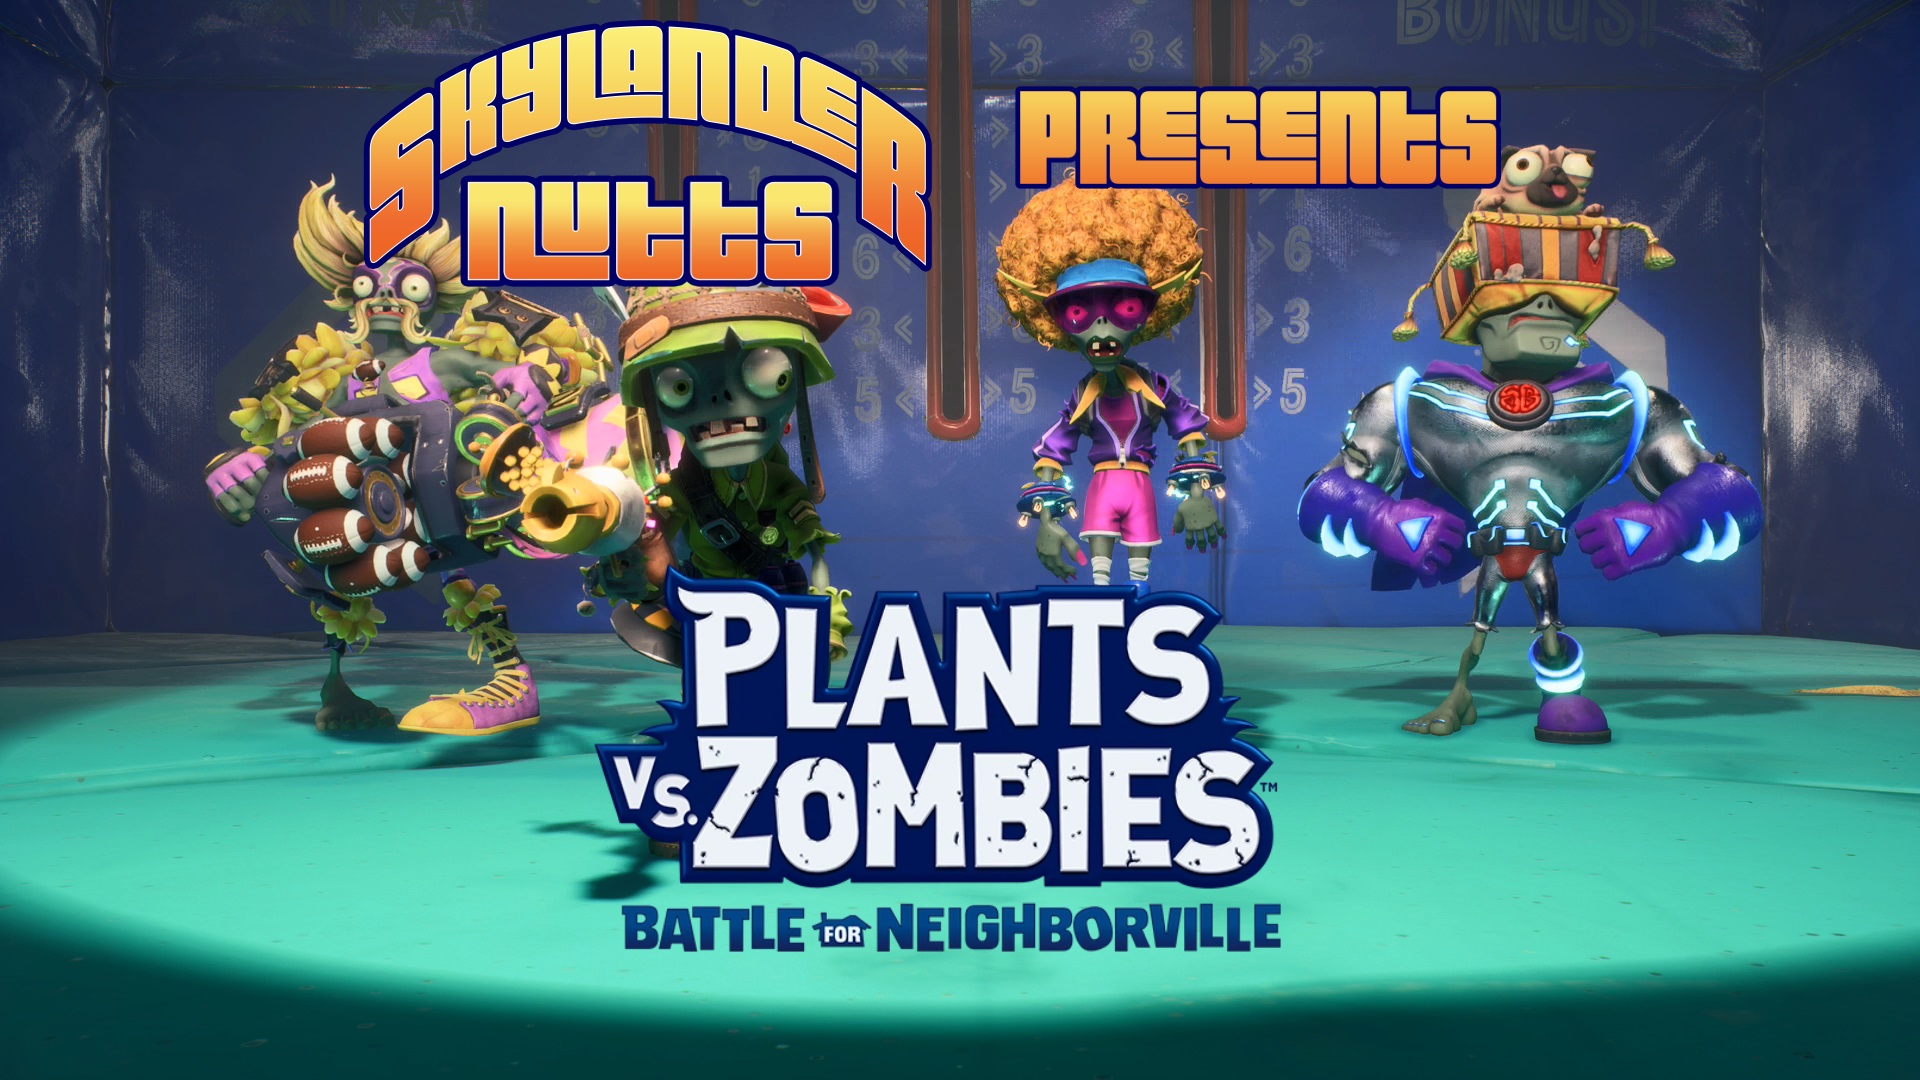 SkylanderNutts Presents Plants vs Zombies Battle For Neighborville (Official Release)